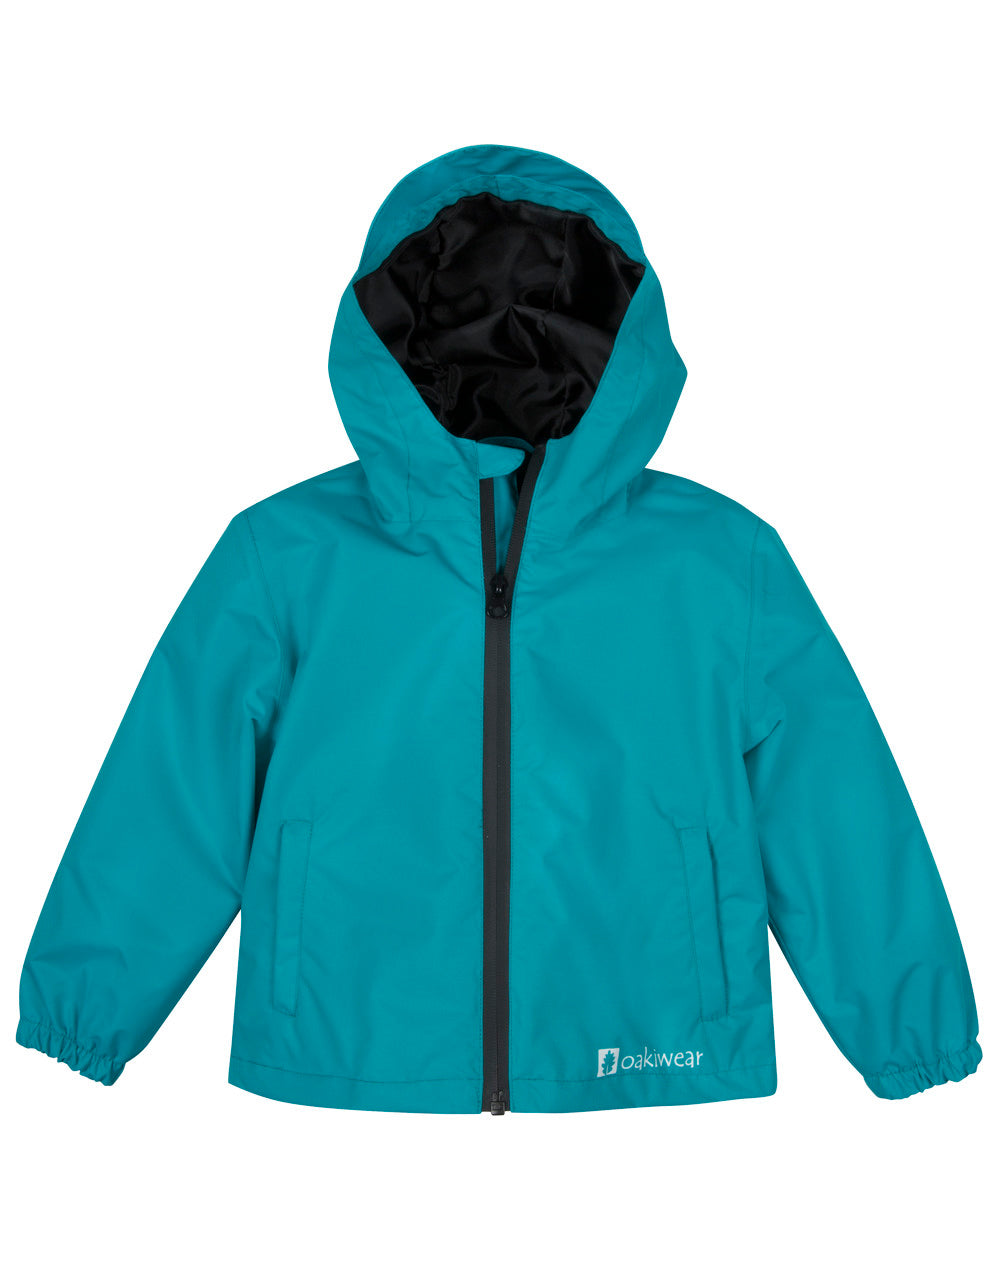 Oakiwear Kids Rain Jacket Coat Waterproof Shell Boys Girls, Glacier Blue